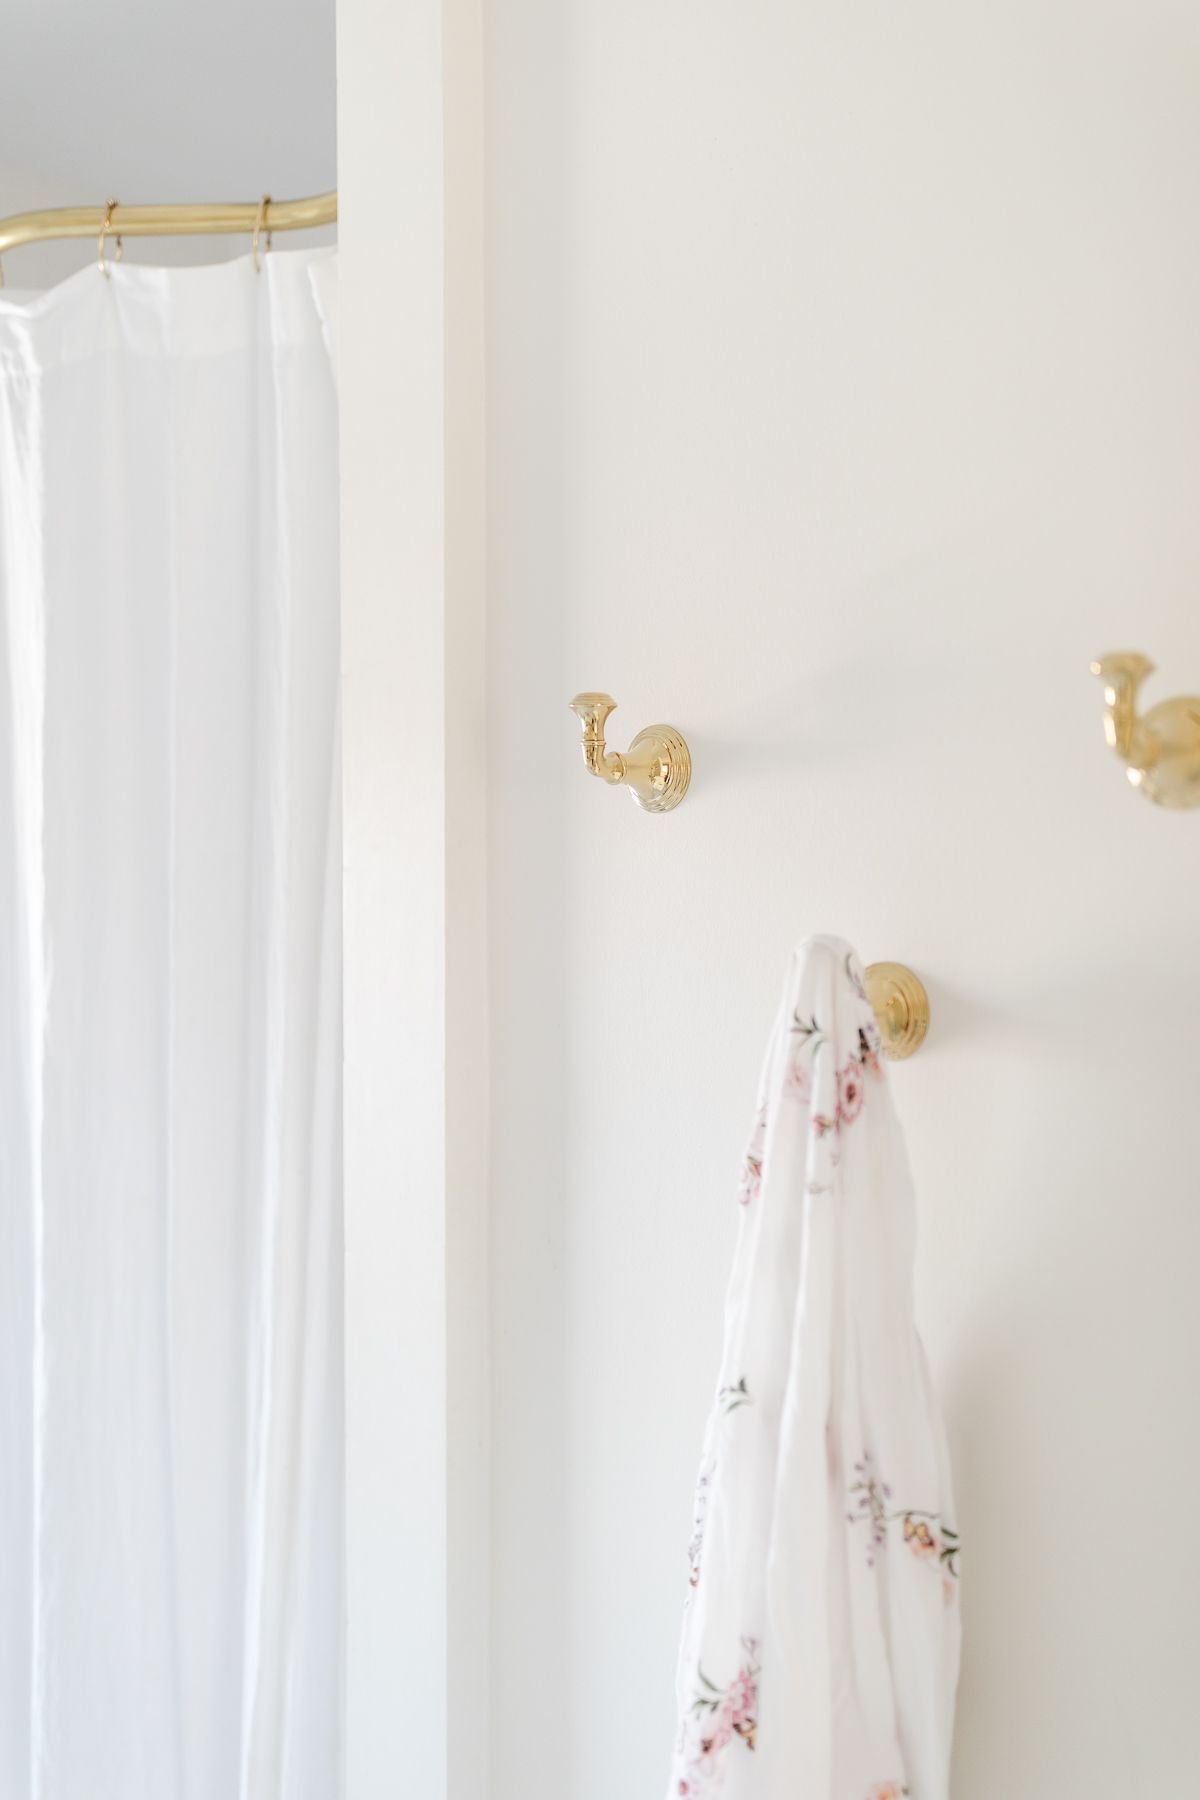 金色长袍挂在白色温泉浴池的墙上